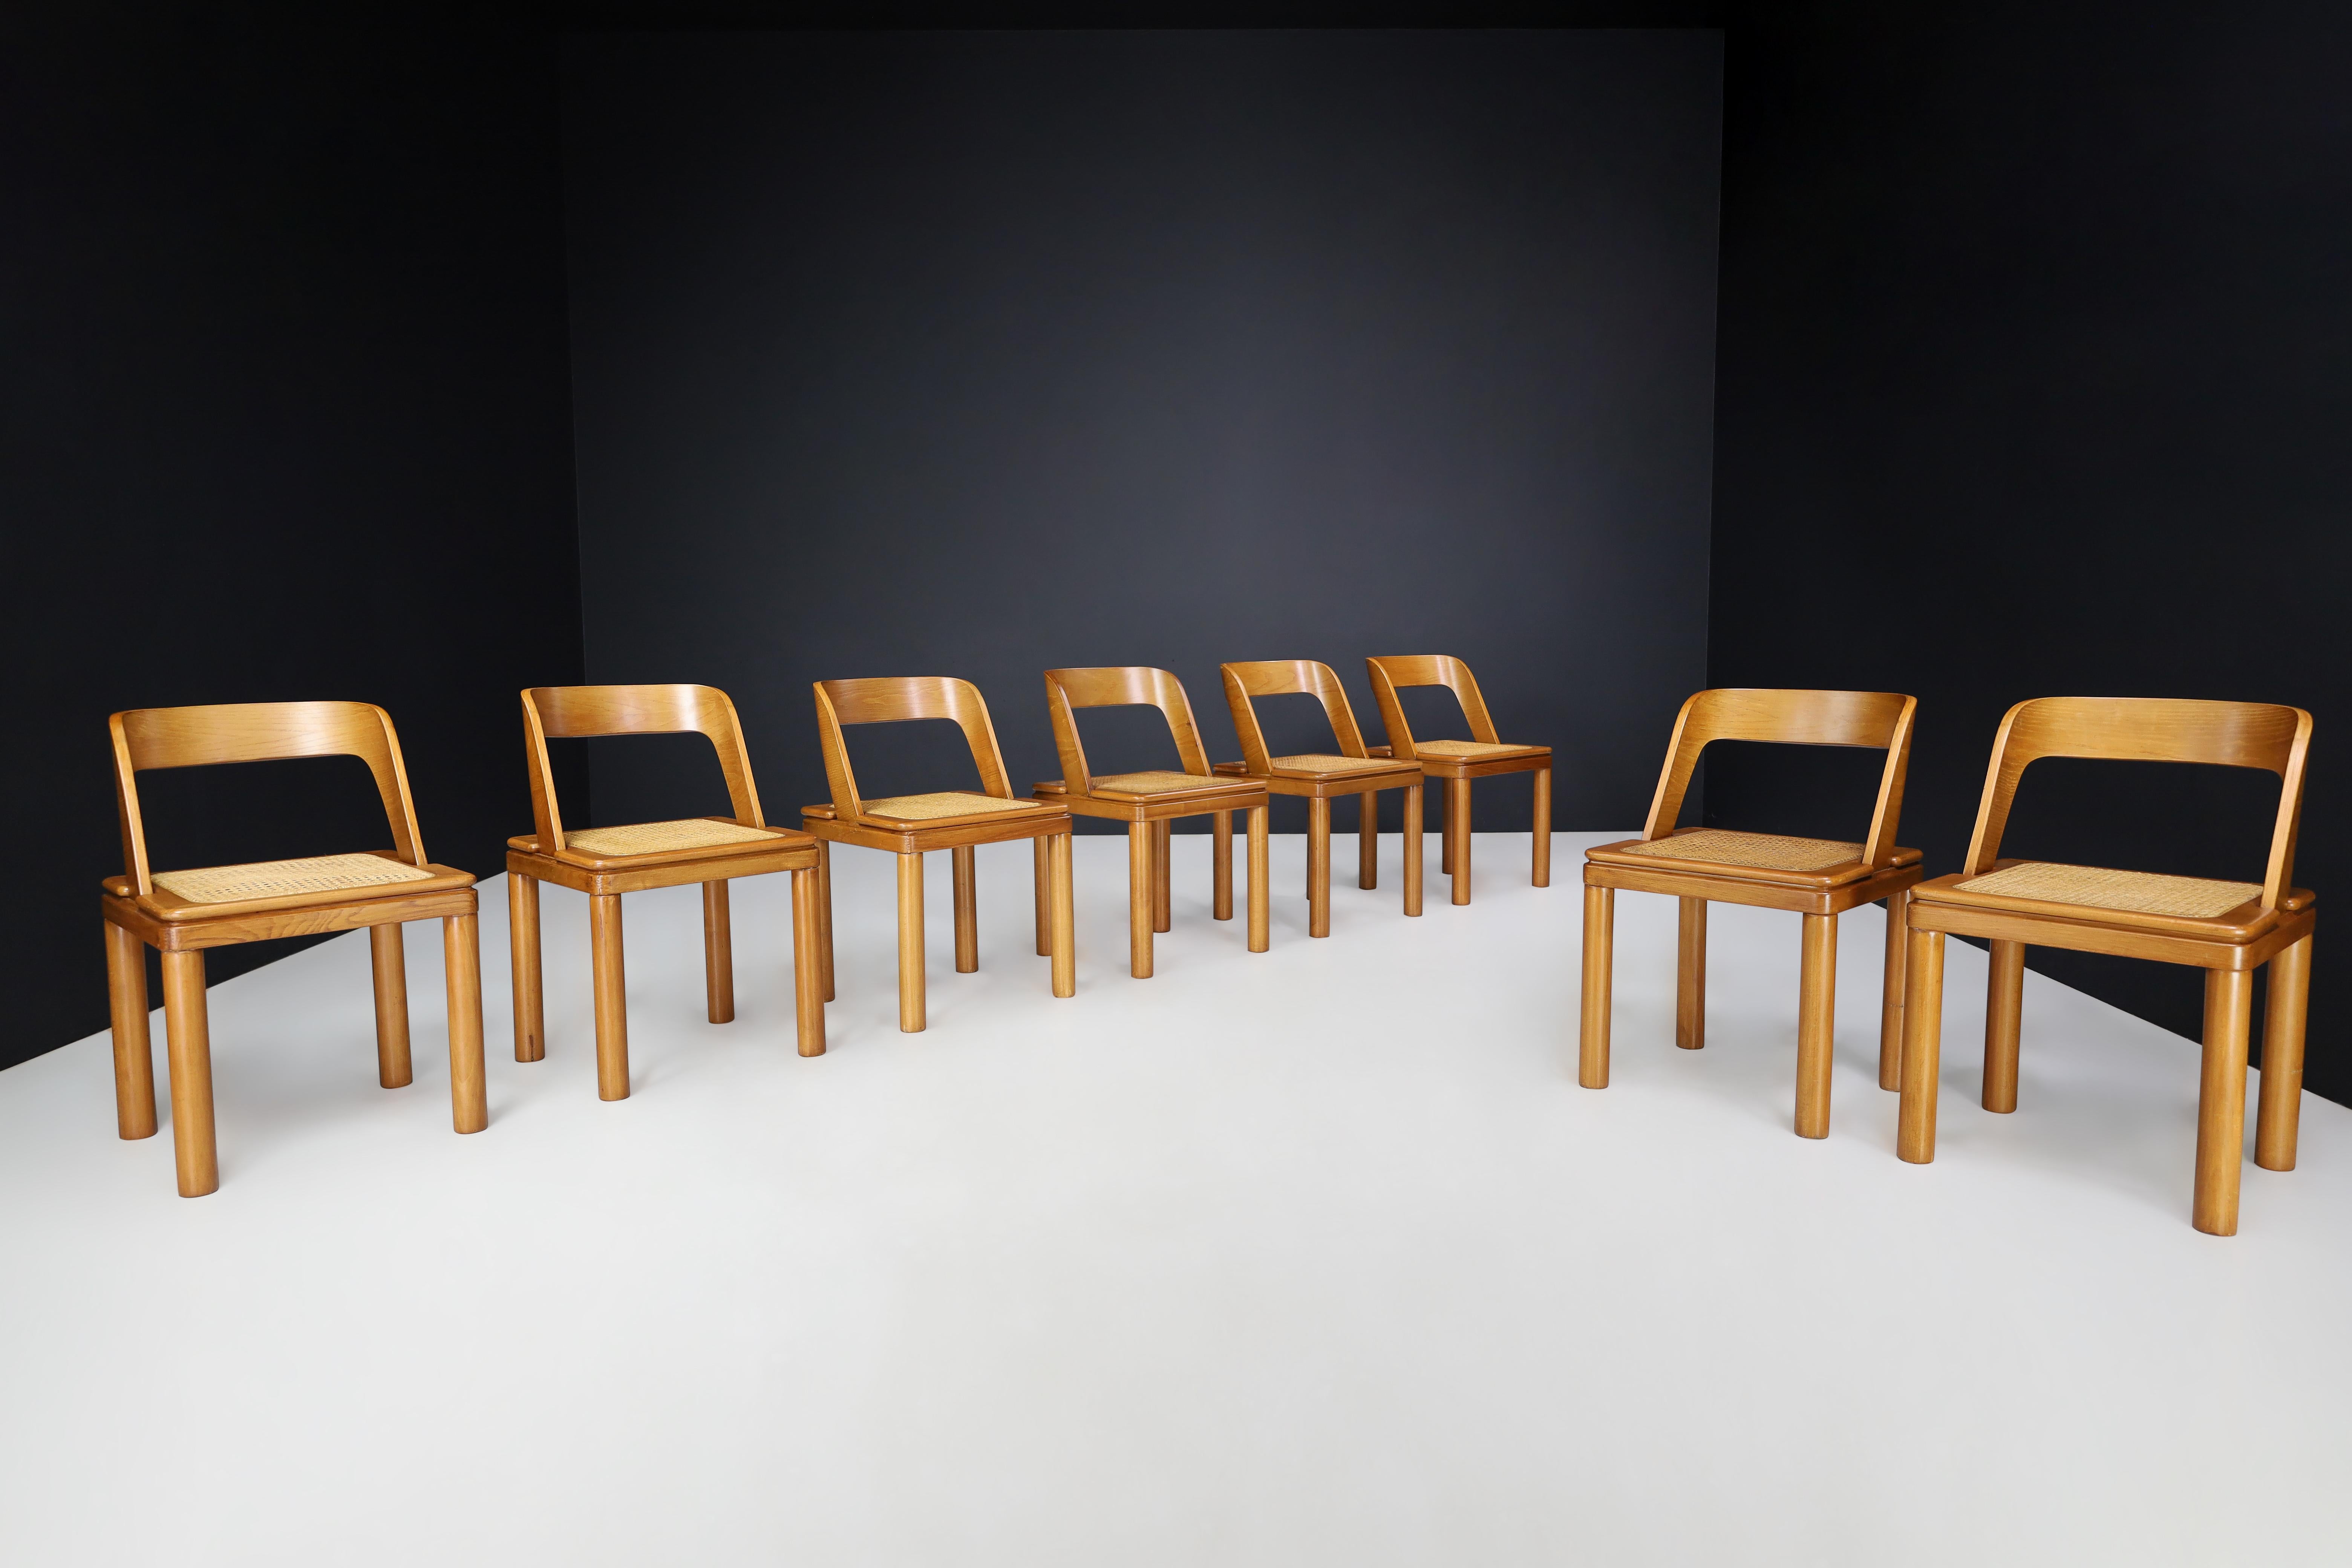 RB Rossana Ensemble de huit chaises de salle à manger en canne et en frêne, Italie, années 1960

Ces chaises de salle à manger RB Rossana, un ensemble de huit, ont été fabriquées en Italie dans les années 1960. Les chaises ont un design épuré et